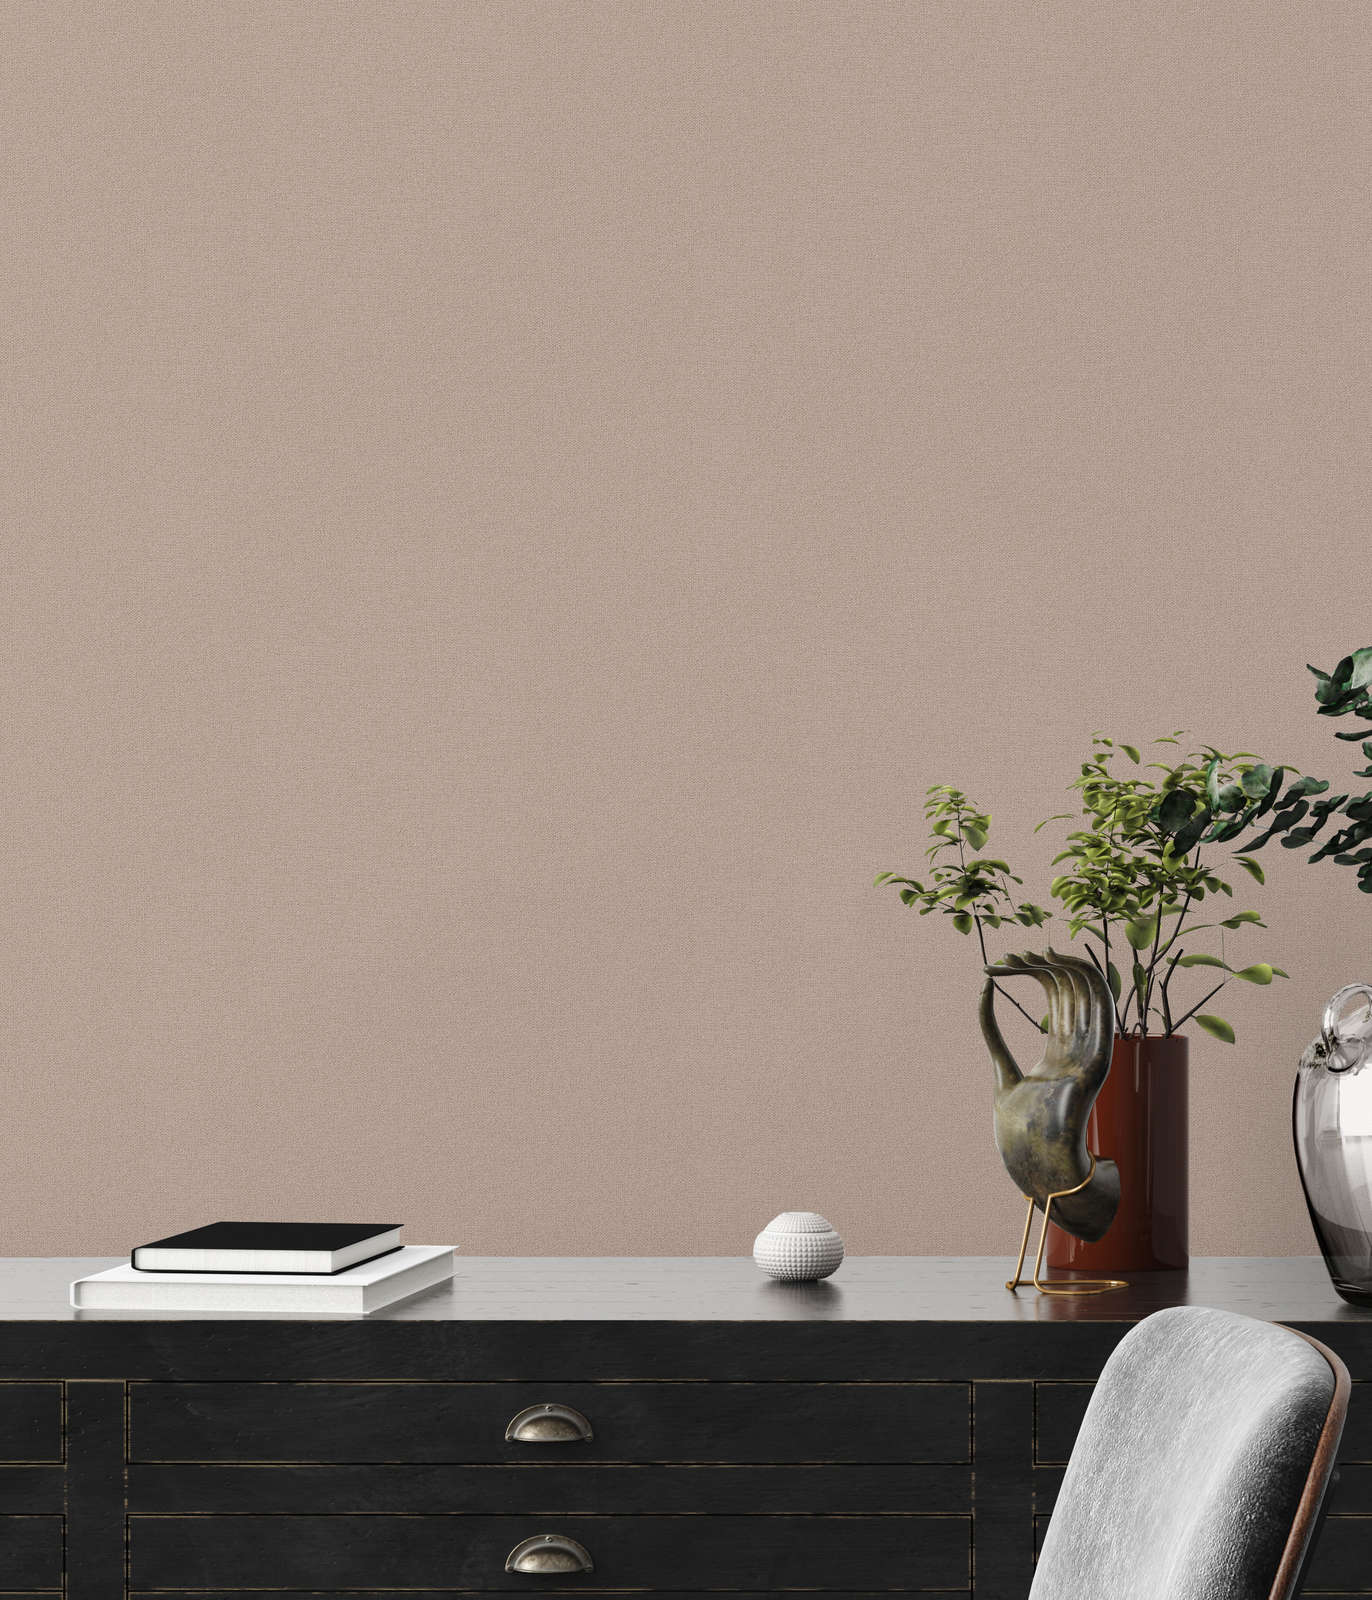             Papel pintado unitario con aspecto de lino sin PVC - marrón, beige
        